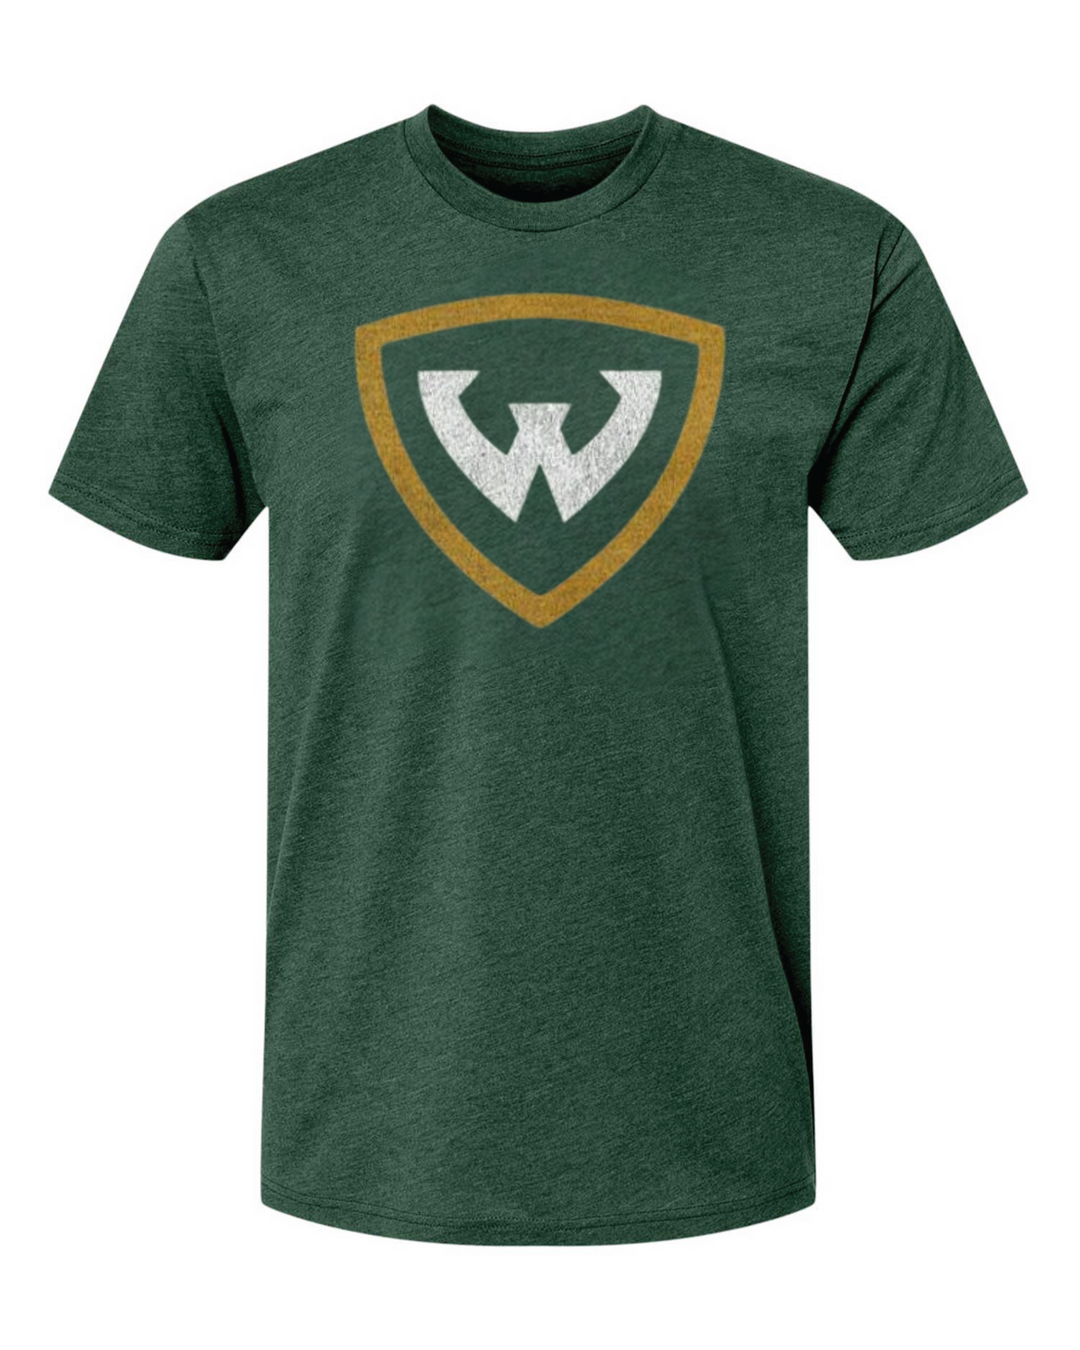 Wayne State University Block W Logo on Green Premium T-Shirt Mock up